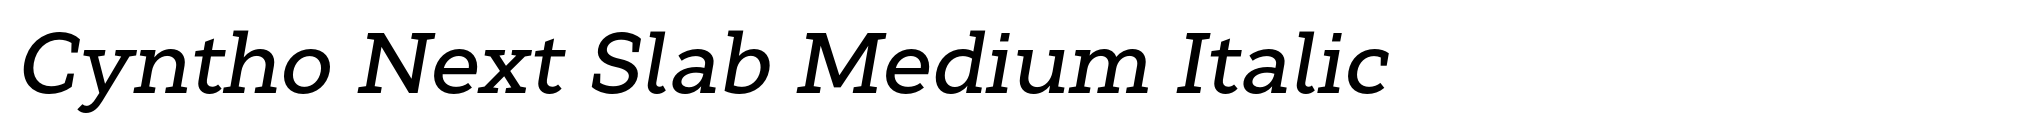 Cyntho Next Slab Medium Italic image